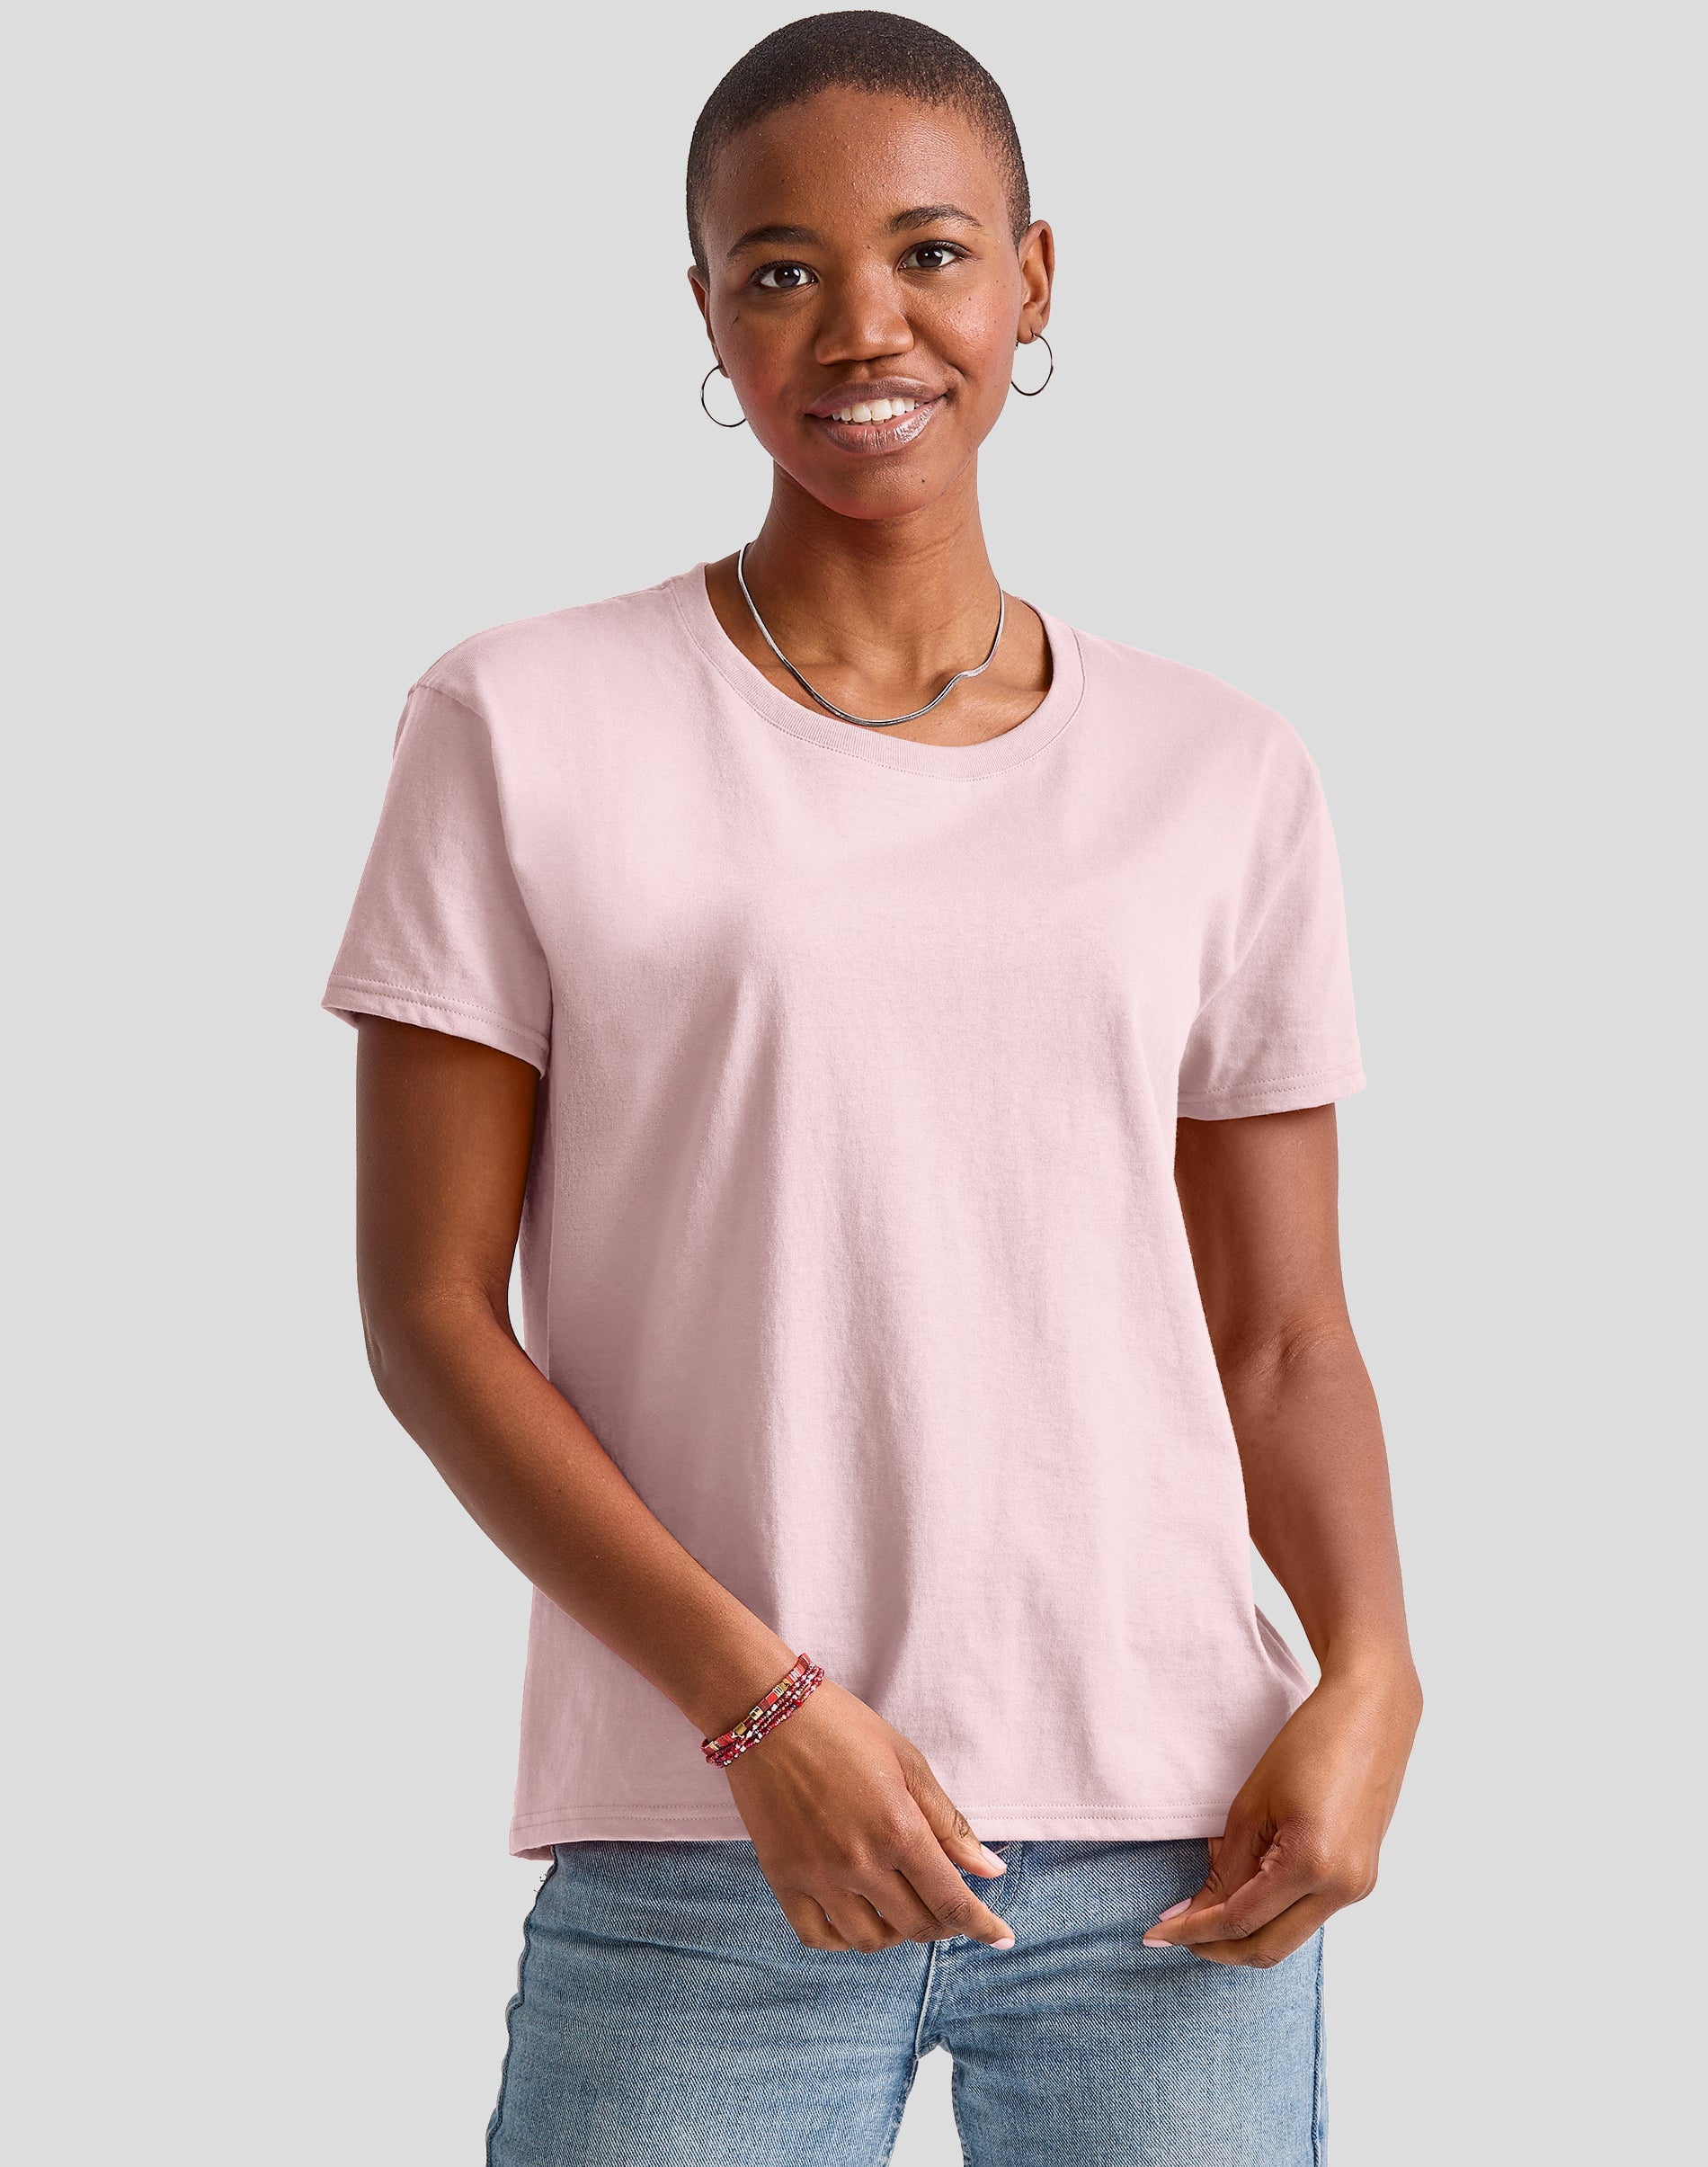 Hanes Essentials Cotton T-Shirt, Oversized Fit Pale - Walmart.com